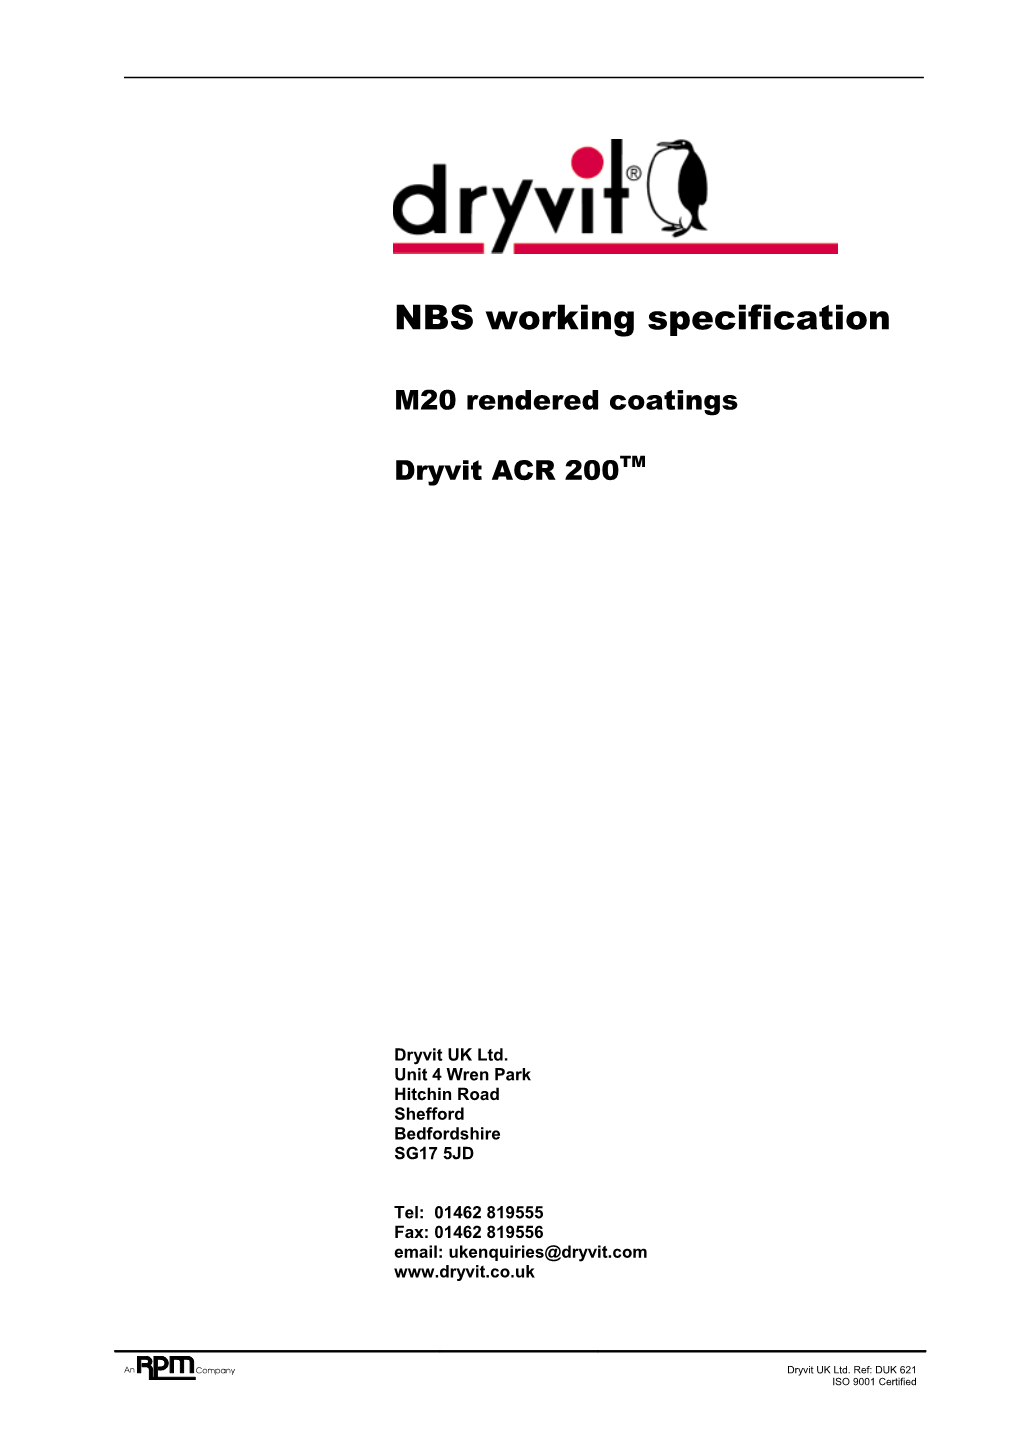 Dryvit UK Ltd - Dryvit ACR 200 Working Specification DUK621